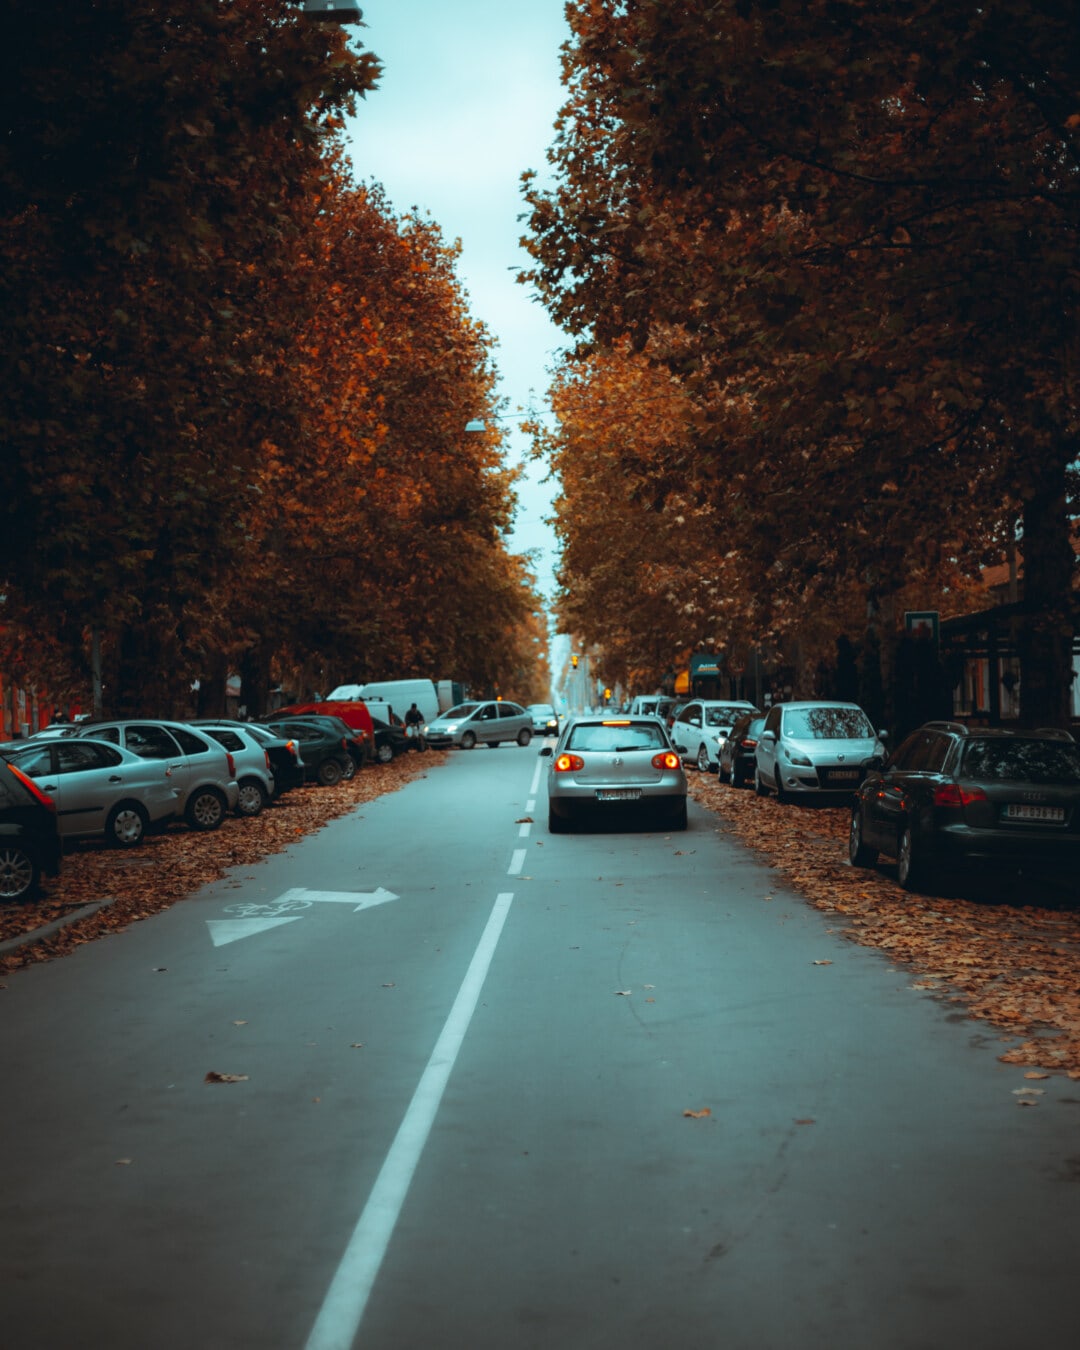 bilar, stadsområde, gata, parkering, hösten, parkeringsplats, trottoar, bil, väg, trafik